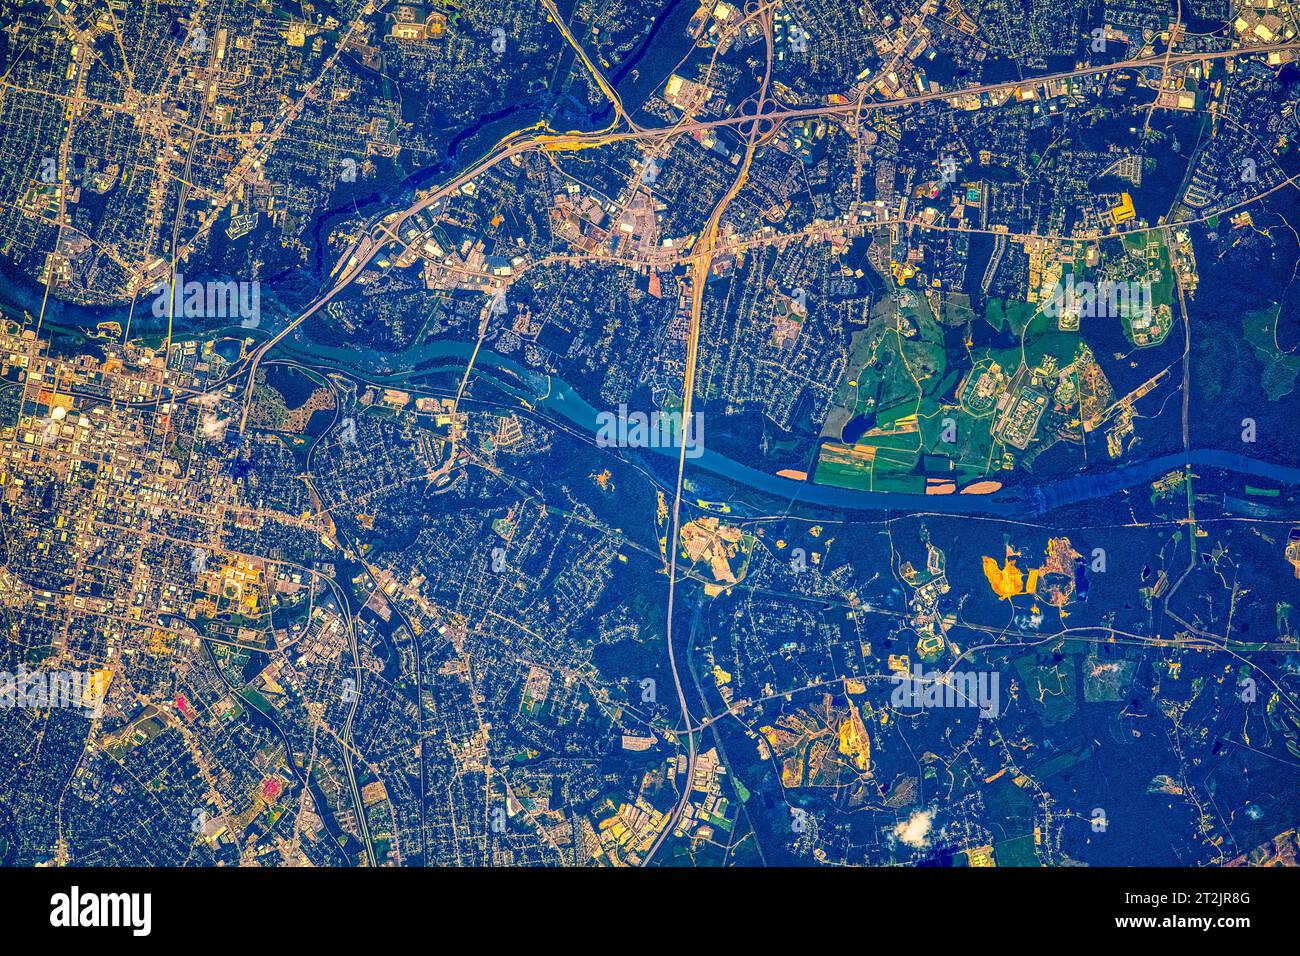 Aree fluviali e urbane della Georgia, USA. Miglioramento digitale di un'immagine da parte della NASA. Foto Stock